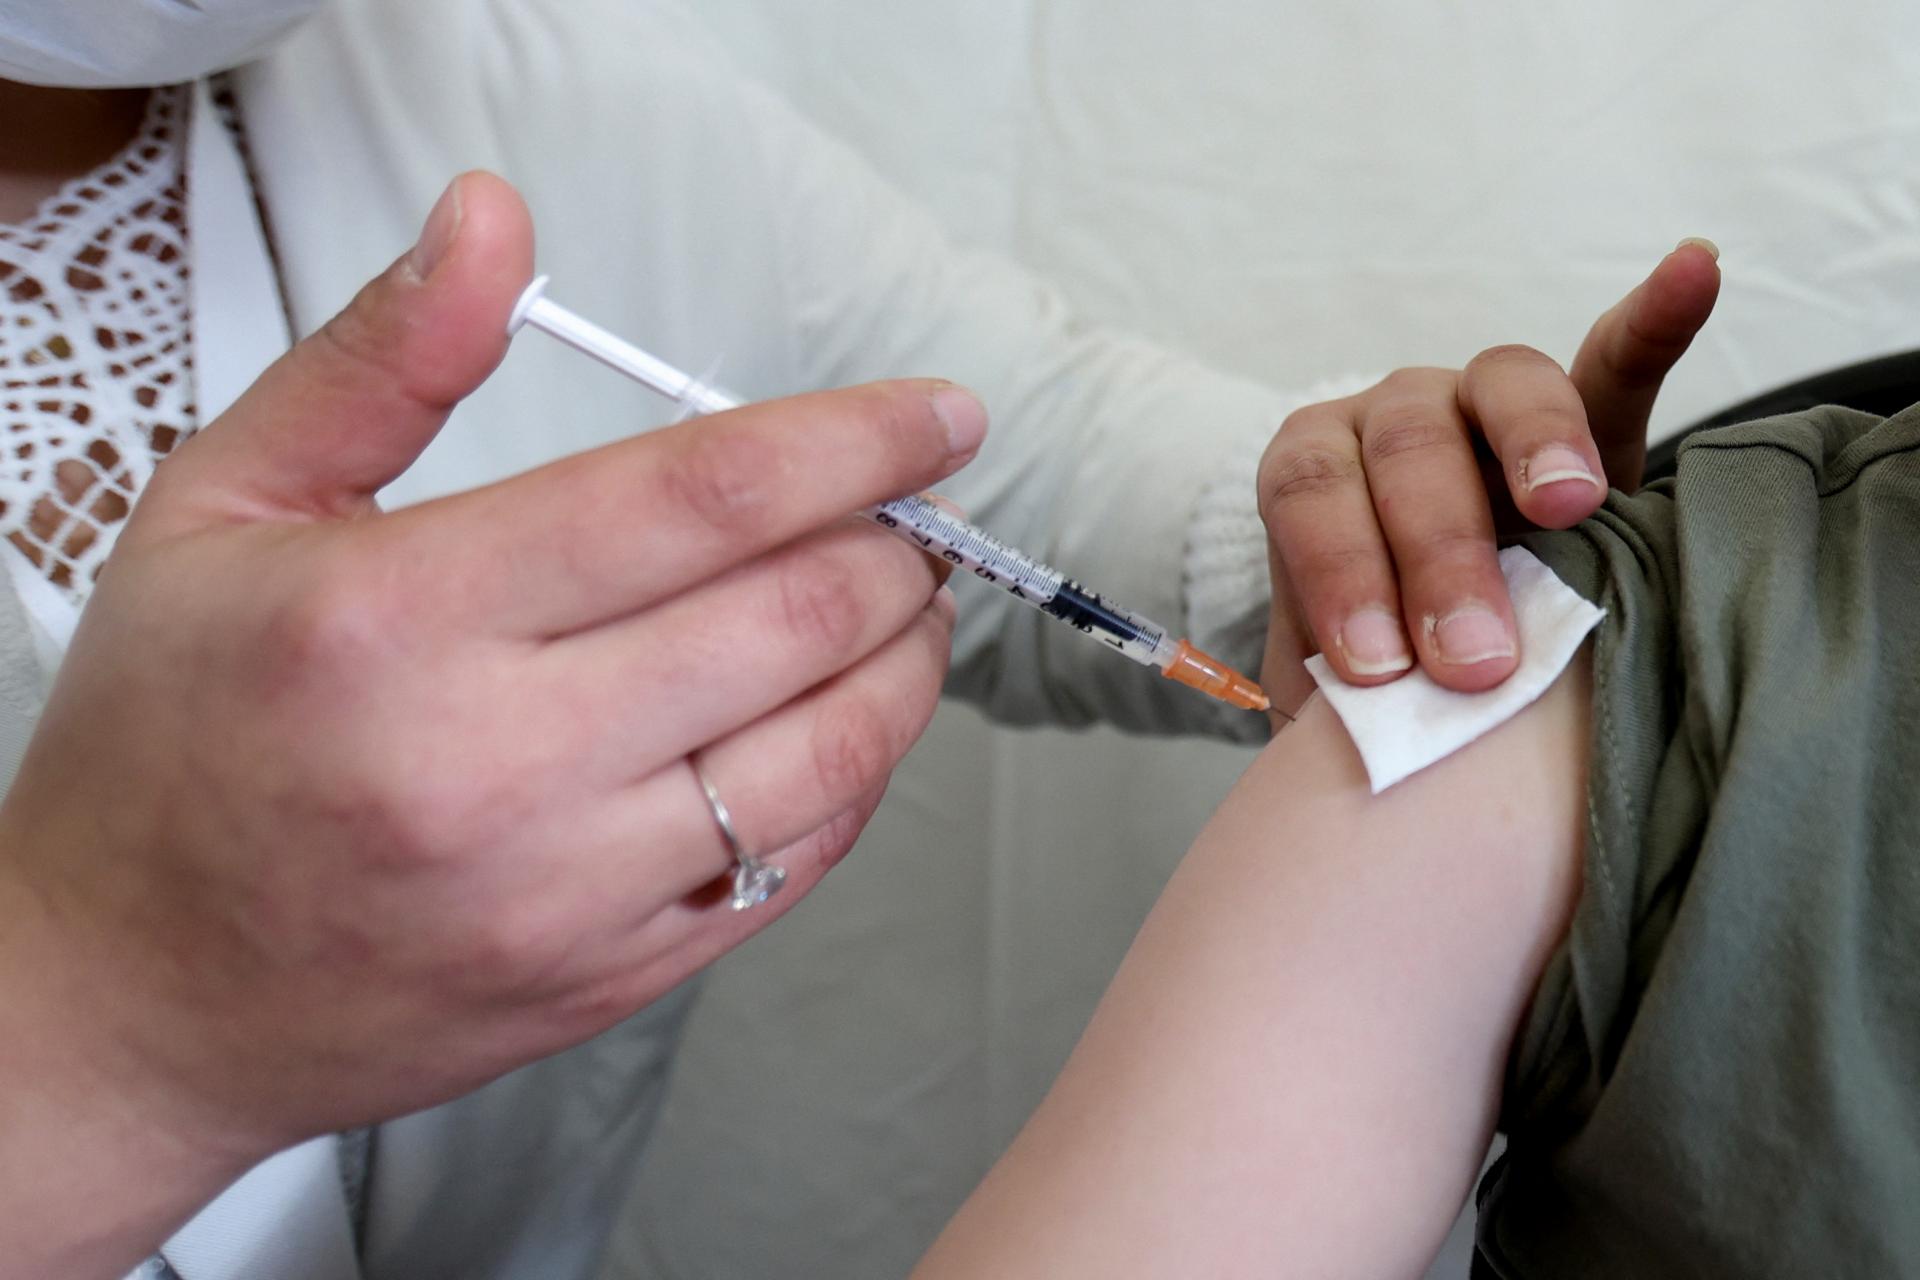 法国6名儿童接种了过剂量的疫苗